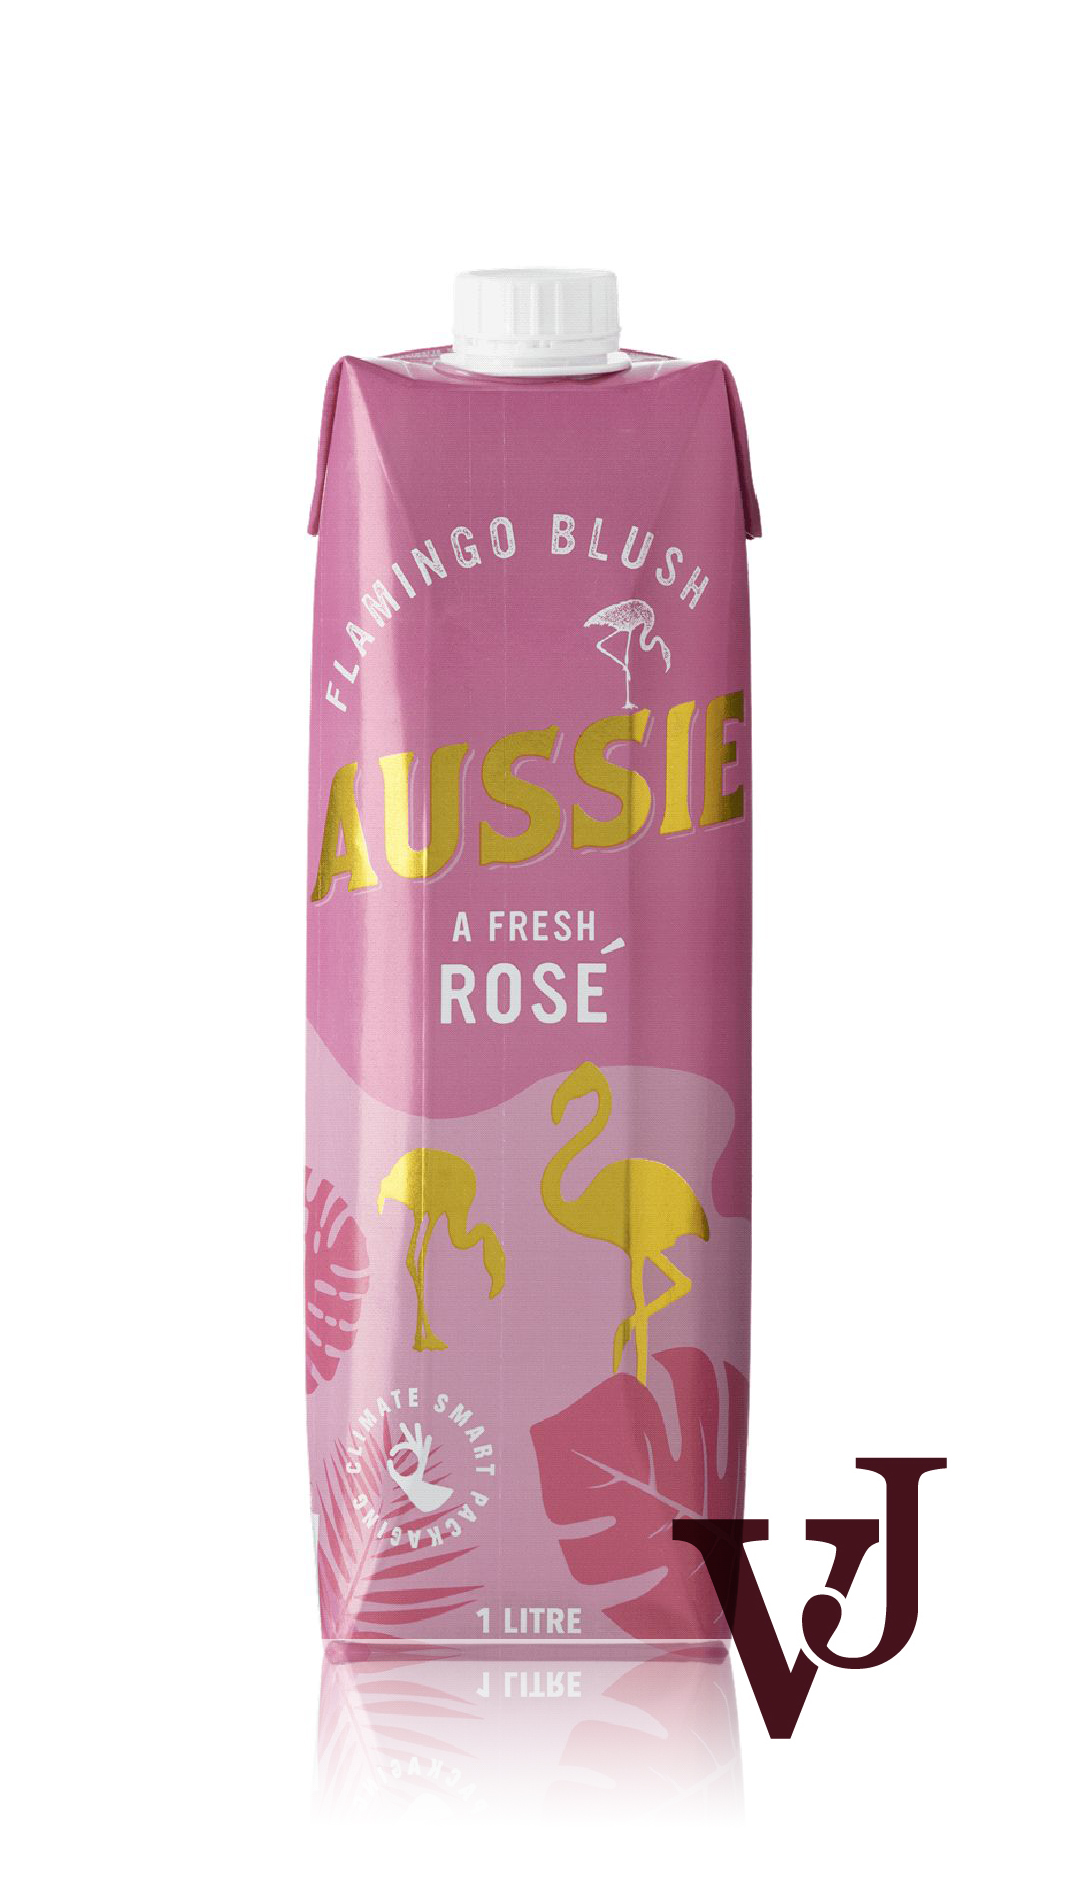 Rosé Vin - AUSSIE Flamingo Blush Rosé artikel nummer 645201 från producenten Altia från området Australien